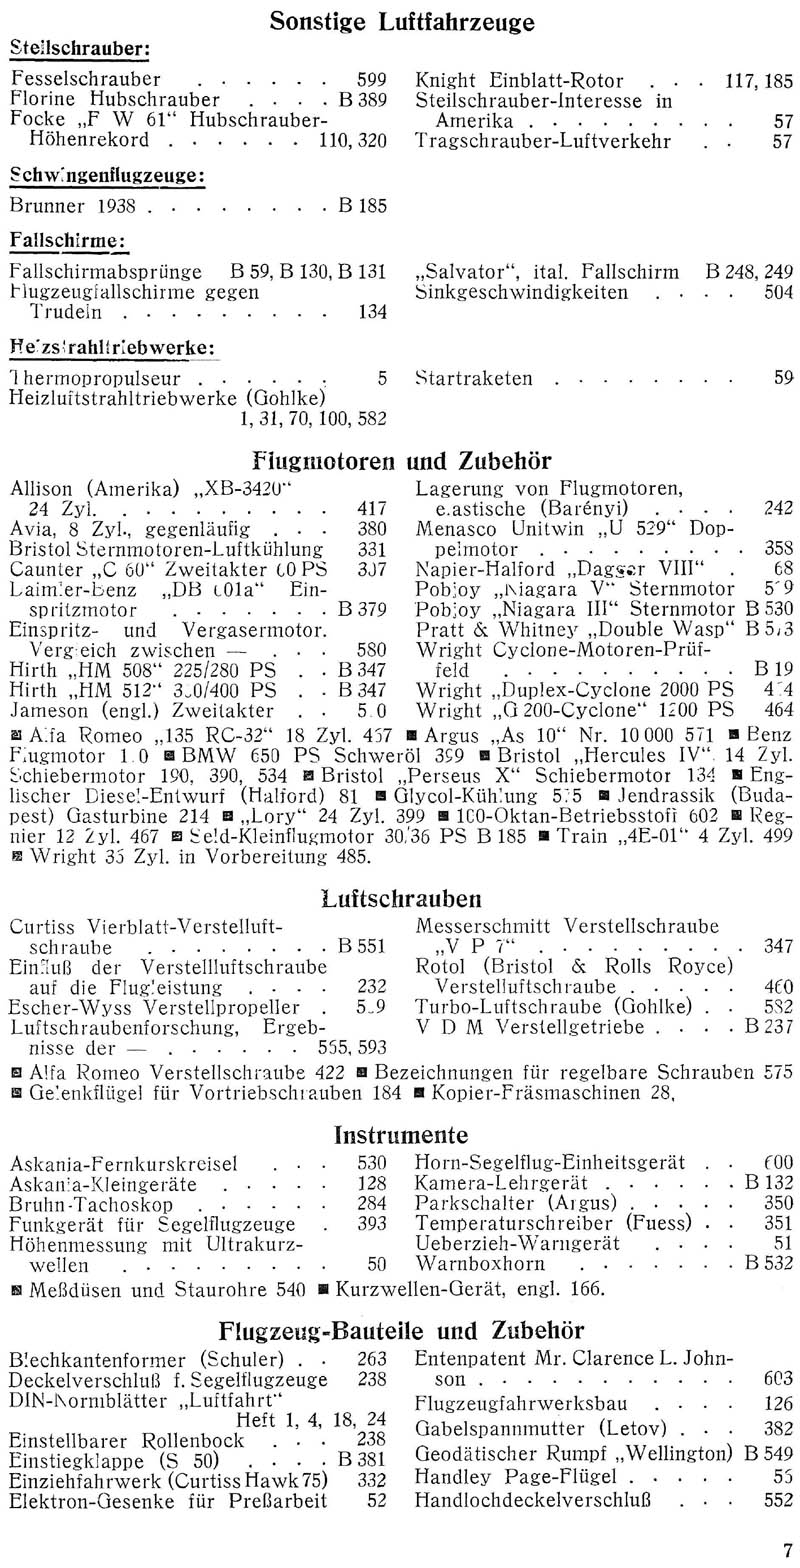 Sachregister und Inhaltsverzeichnis der Zeitschrift Flugsport für das Jahr 1939